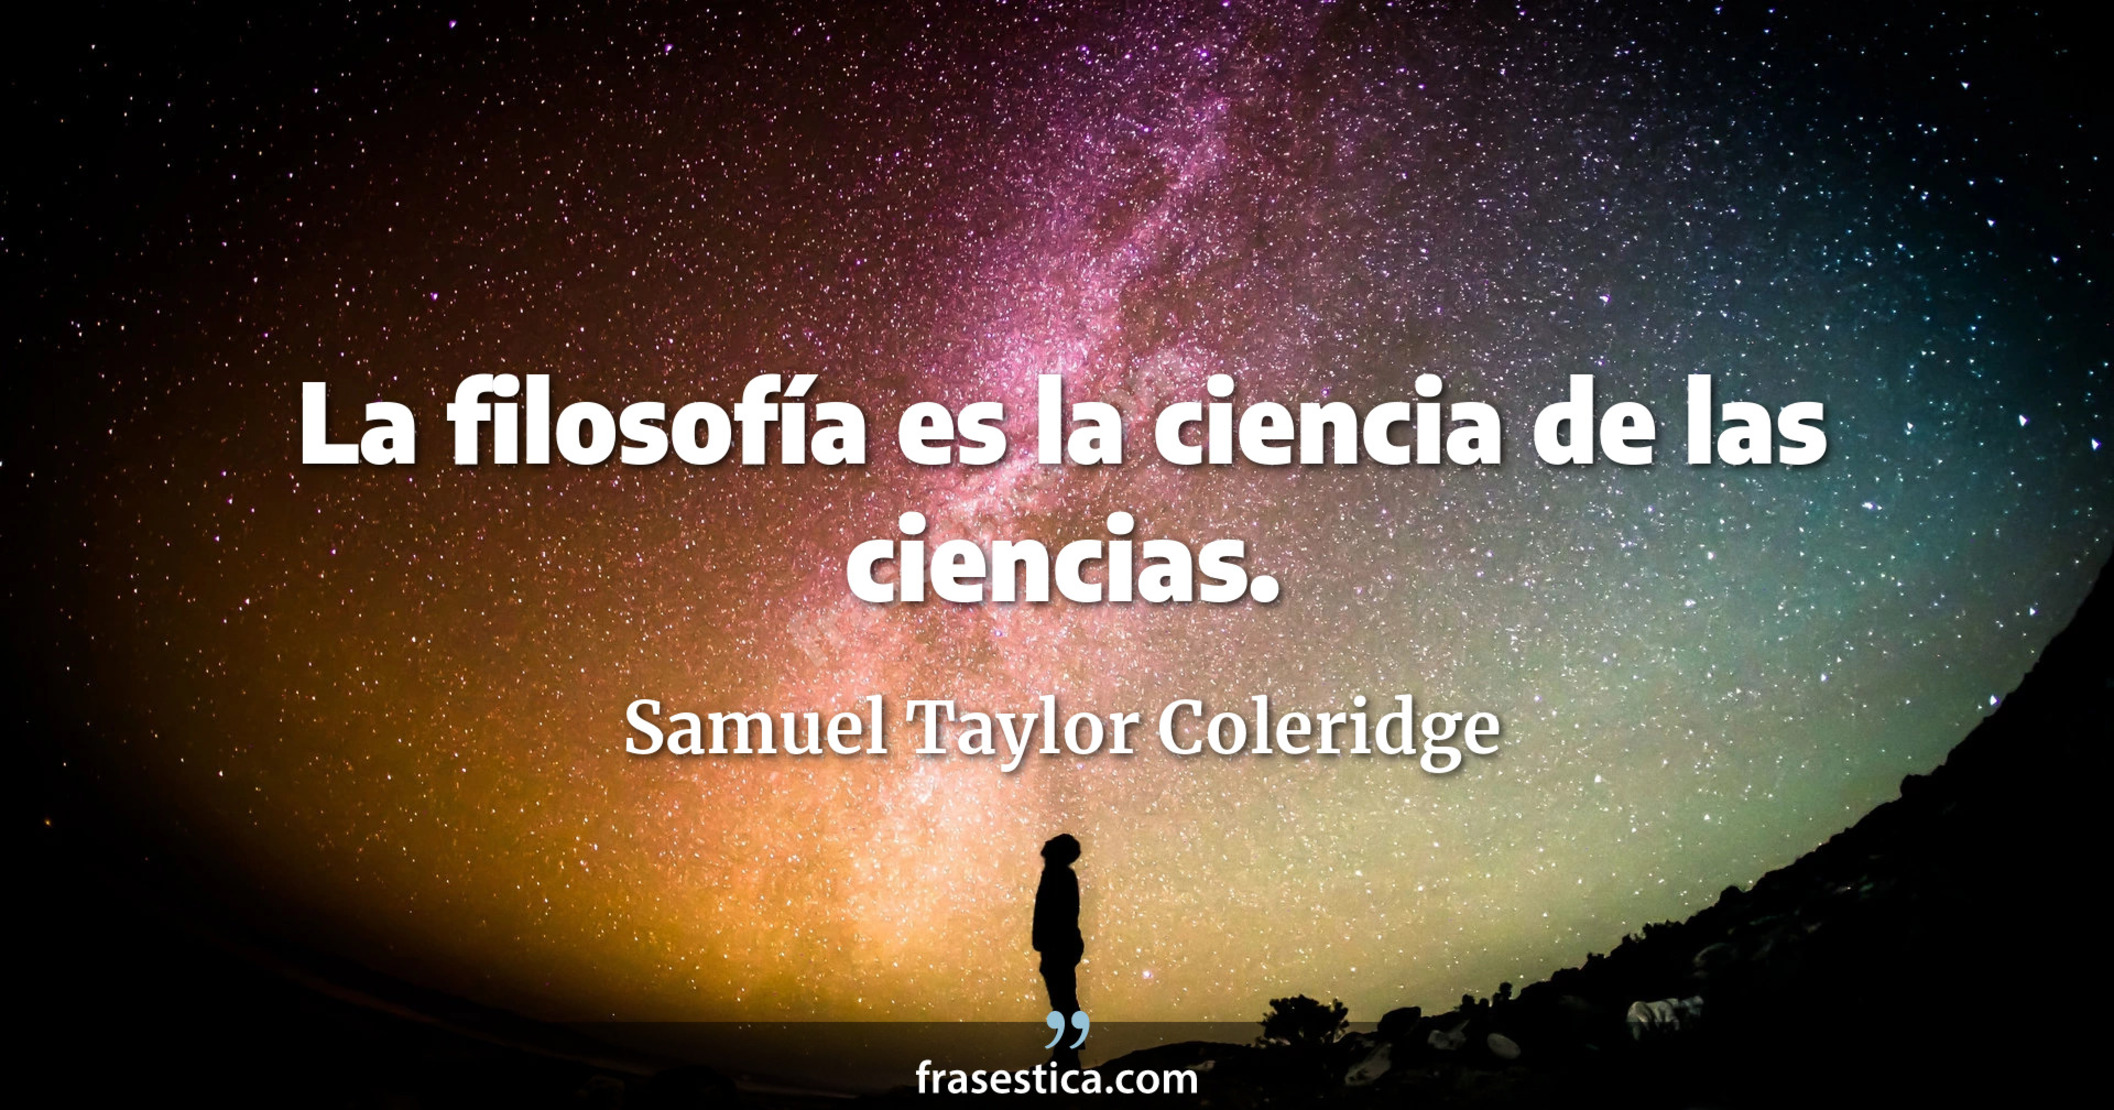 La filosofía es la ciencia de las ciencias. - Samuel Taylor Coleridge